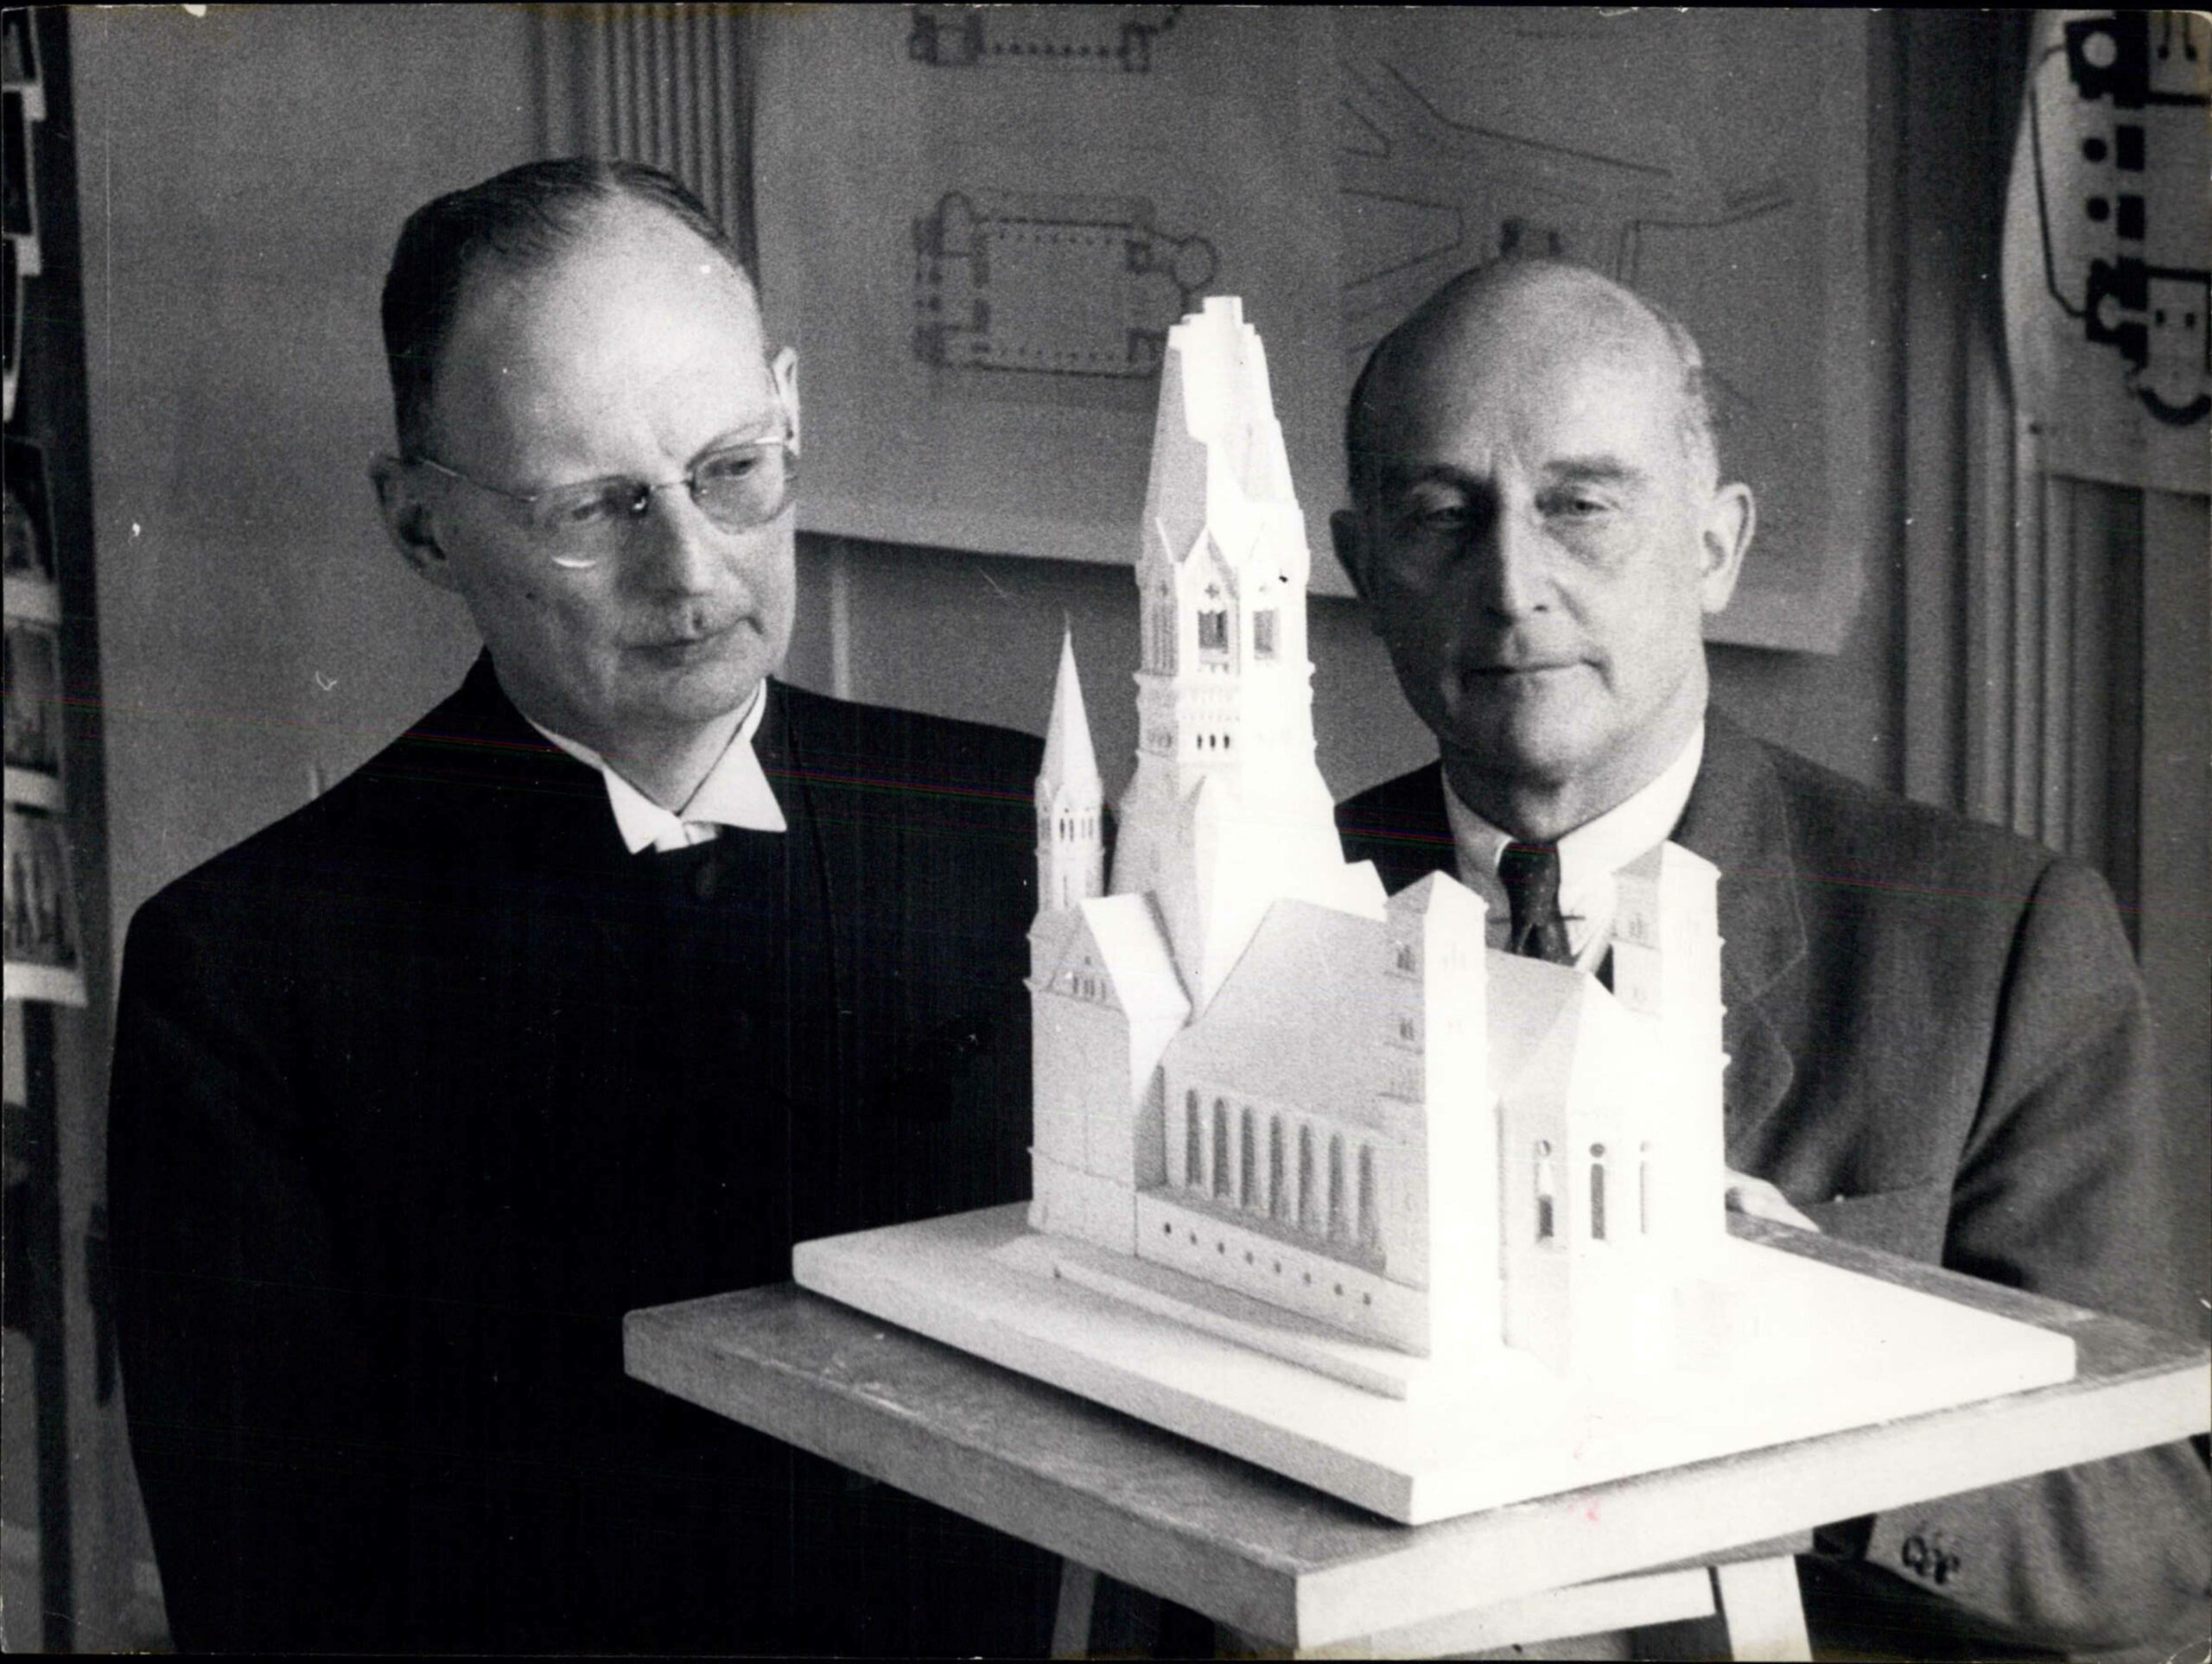 Das Modell der neuen Kirche, entworfen von Professor Werner March (rechts) und dem Bischof Gerhard Jacobi, März 1954. Foto: Imago/Zuma/Keystone